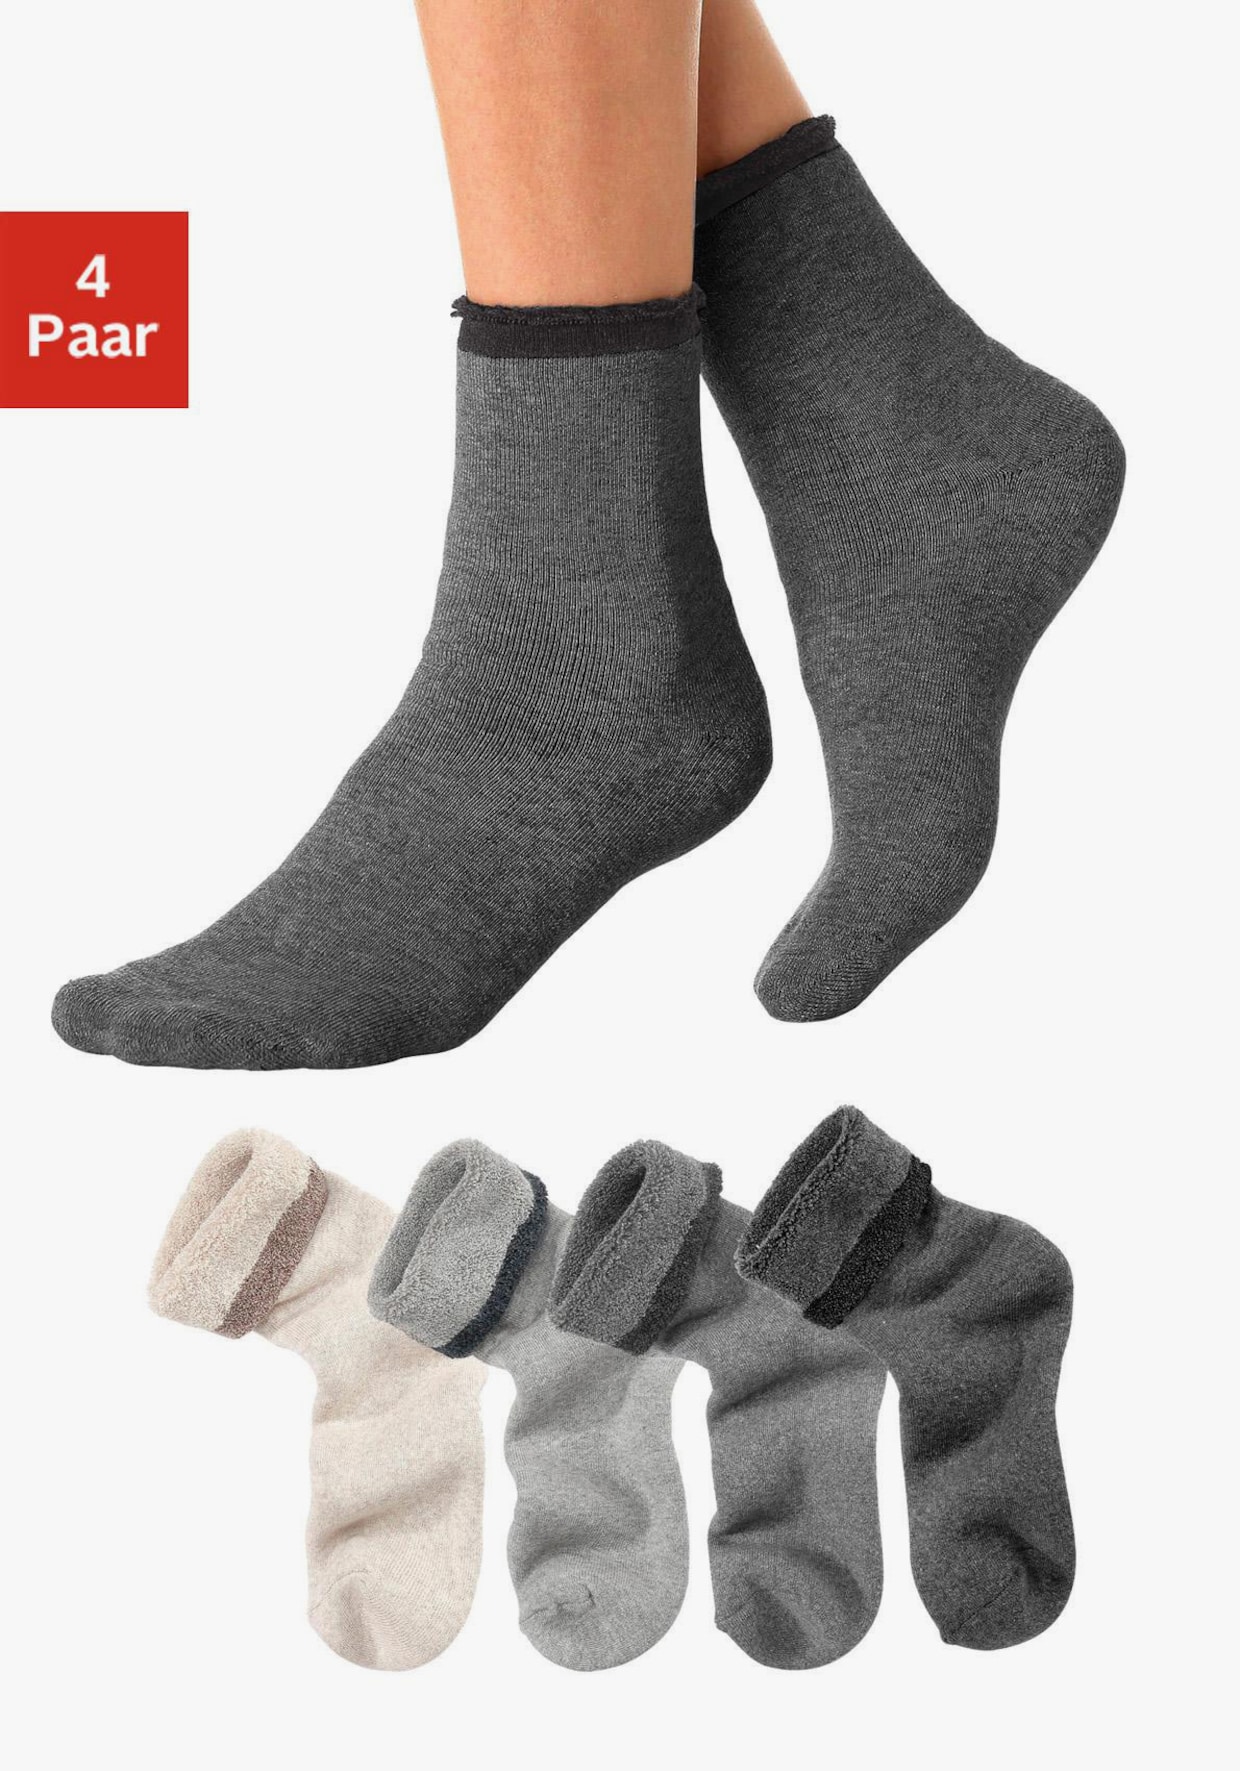 Lavana Warme sokken - 1x beige + 1x grijs + 1x lichtgrijs + 1x antraciet